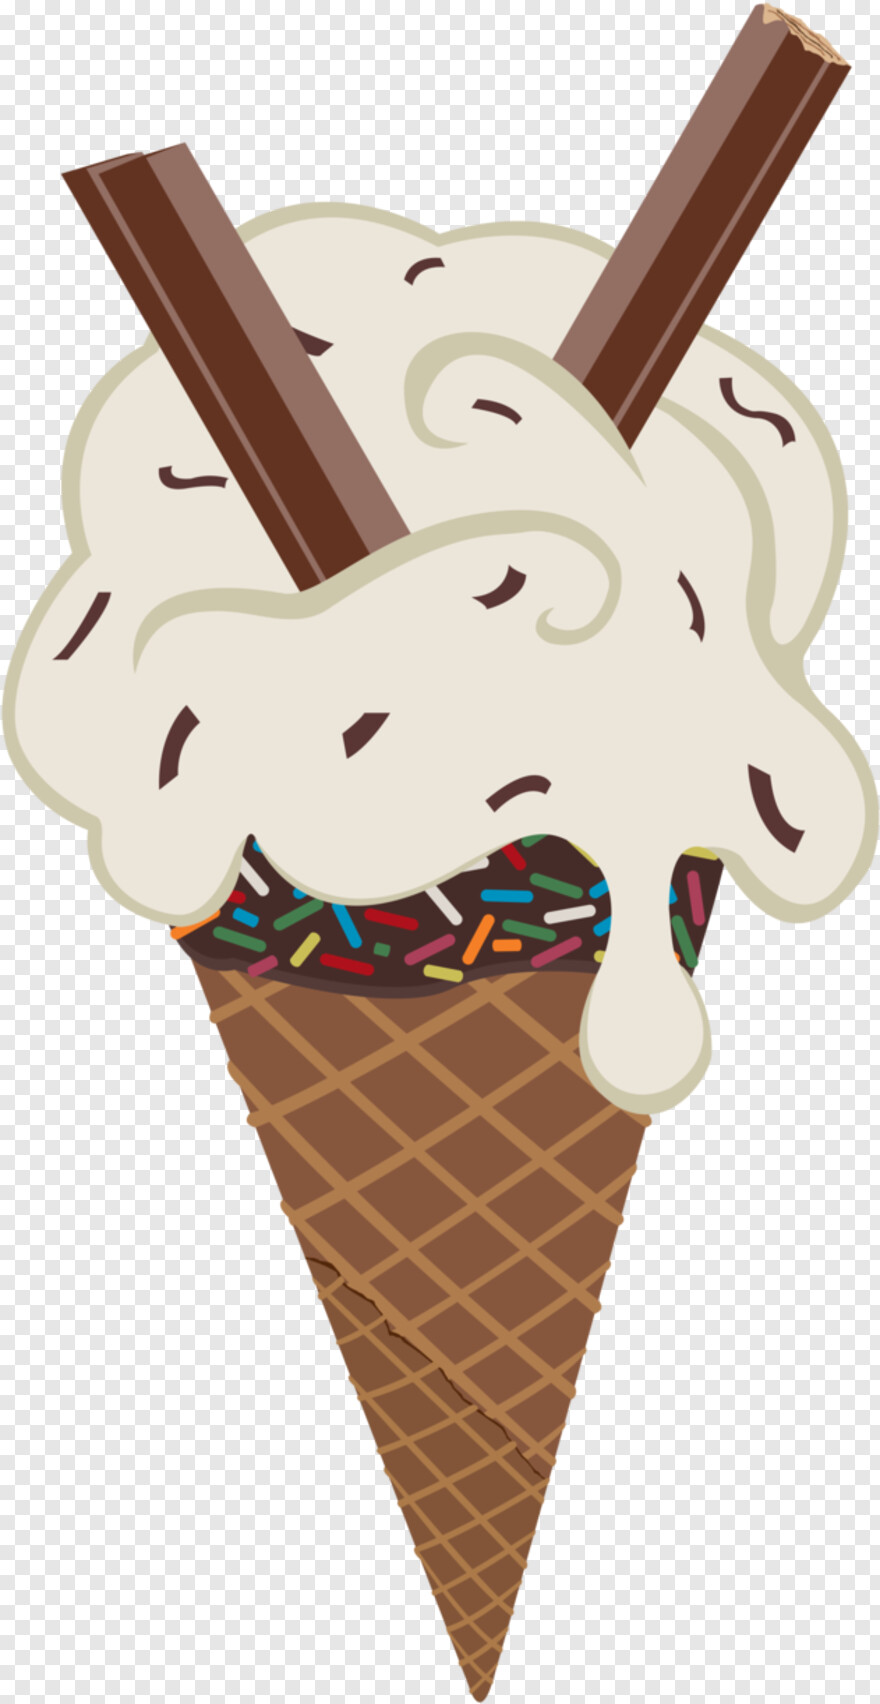 ice-cream-sundae # 966714